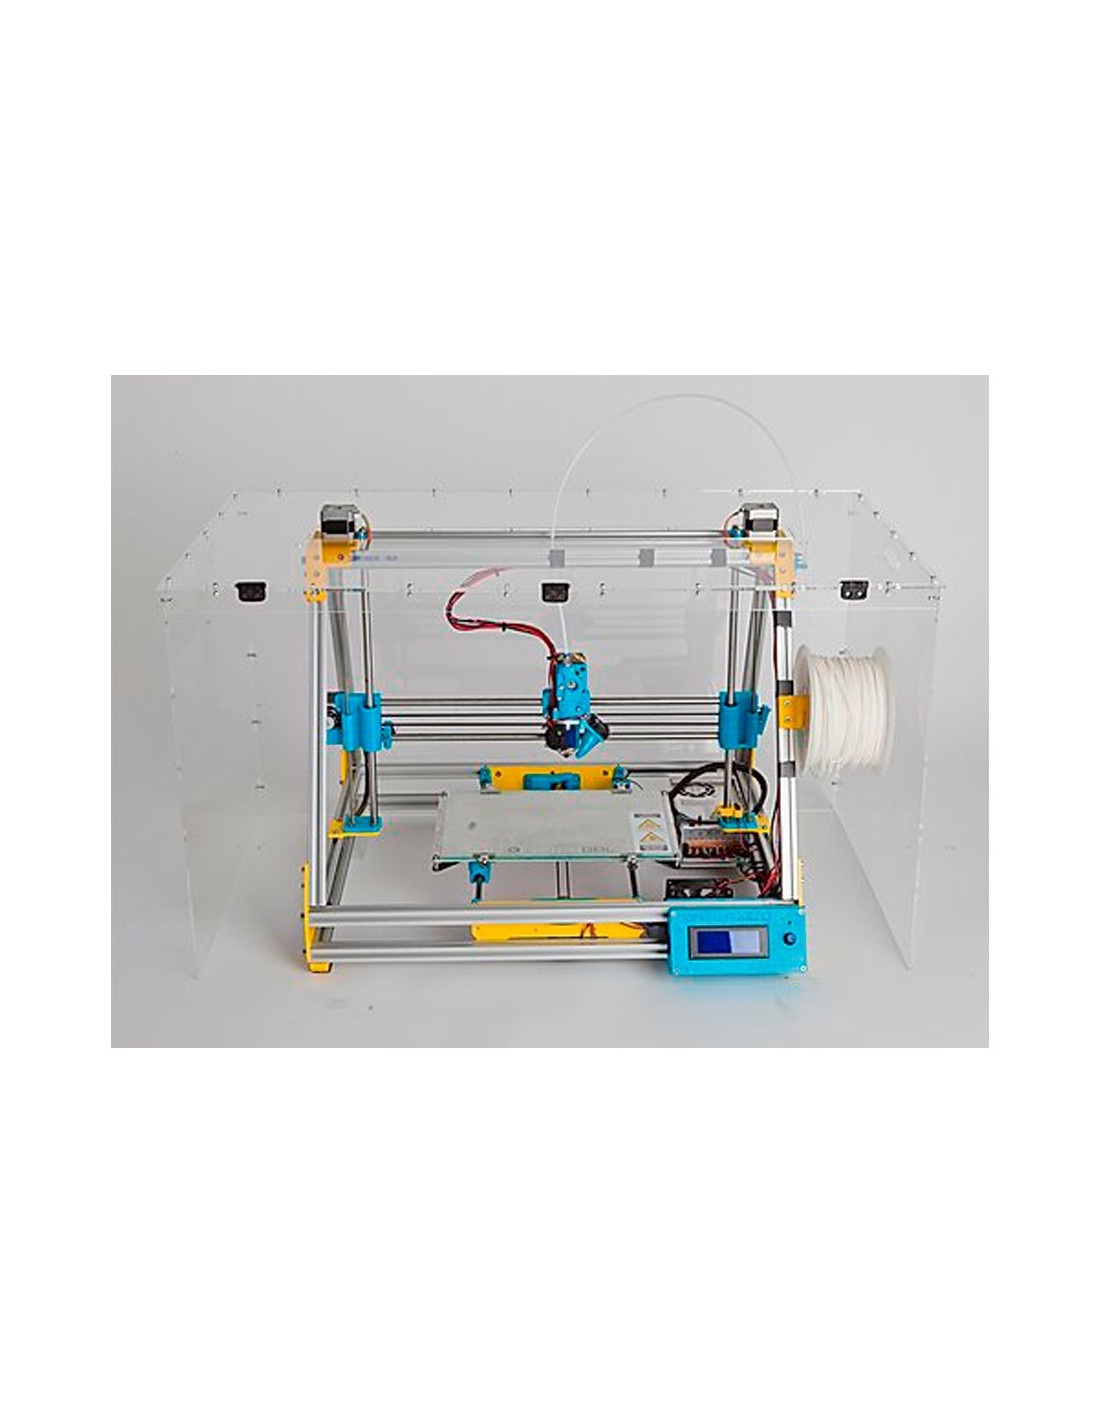 Mendel Max XL V5 3D Printer